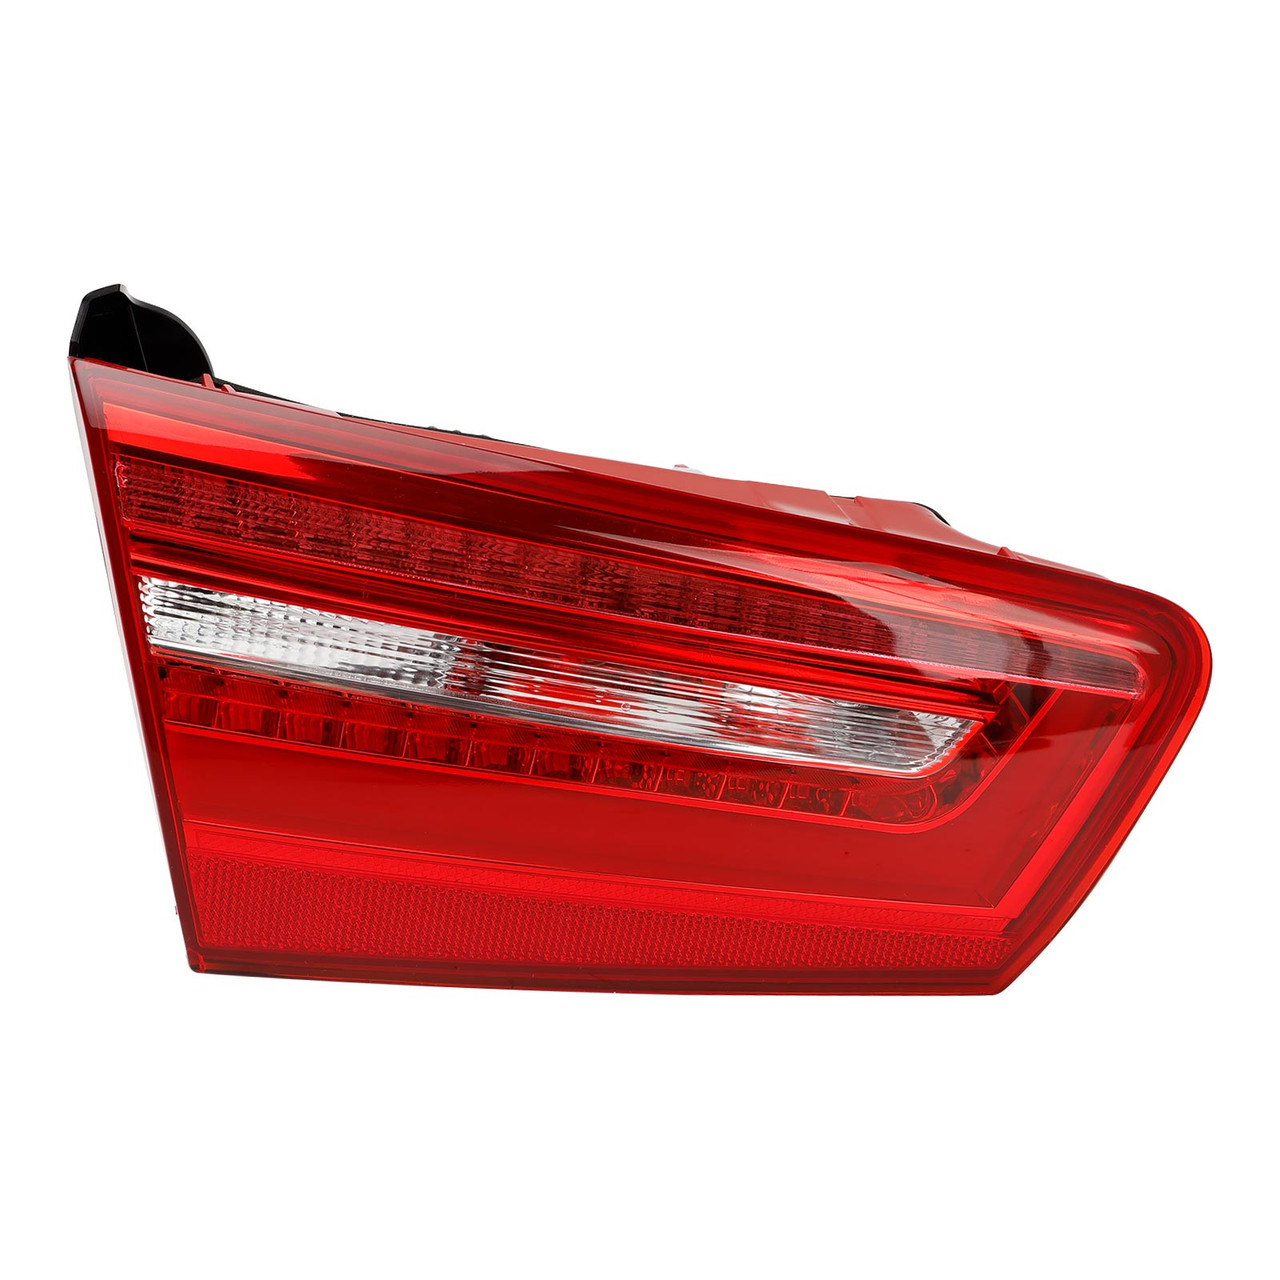 4GD945093 2012-2015 Audi A6 C7 Left Inner Trunk LED Tail Light Lamp